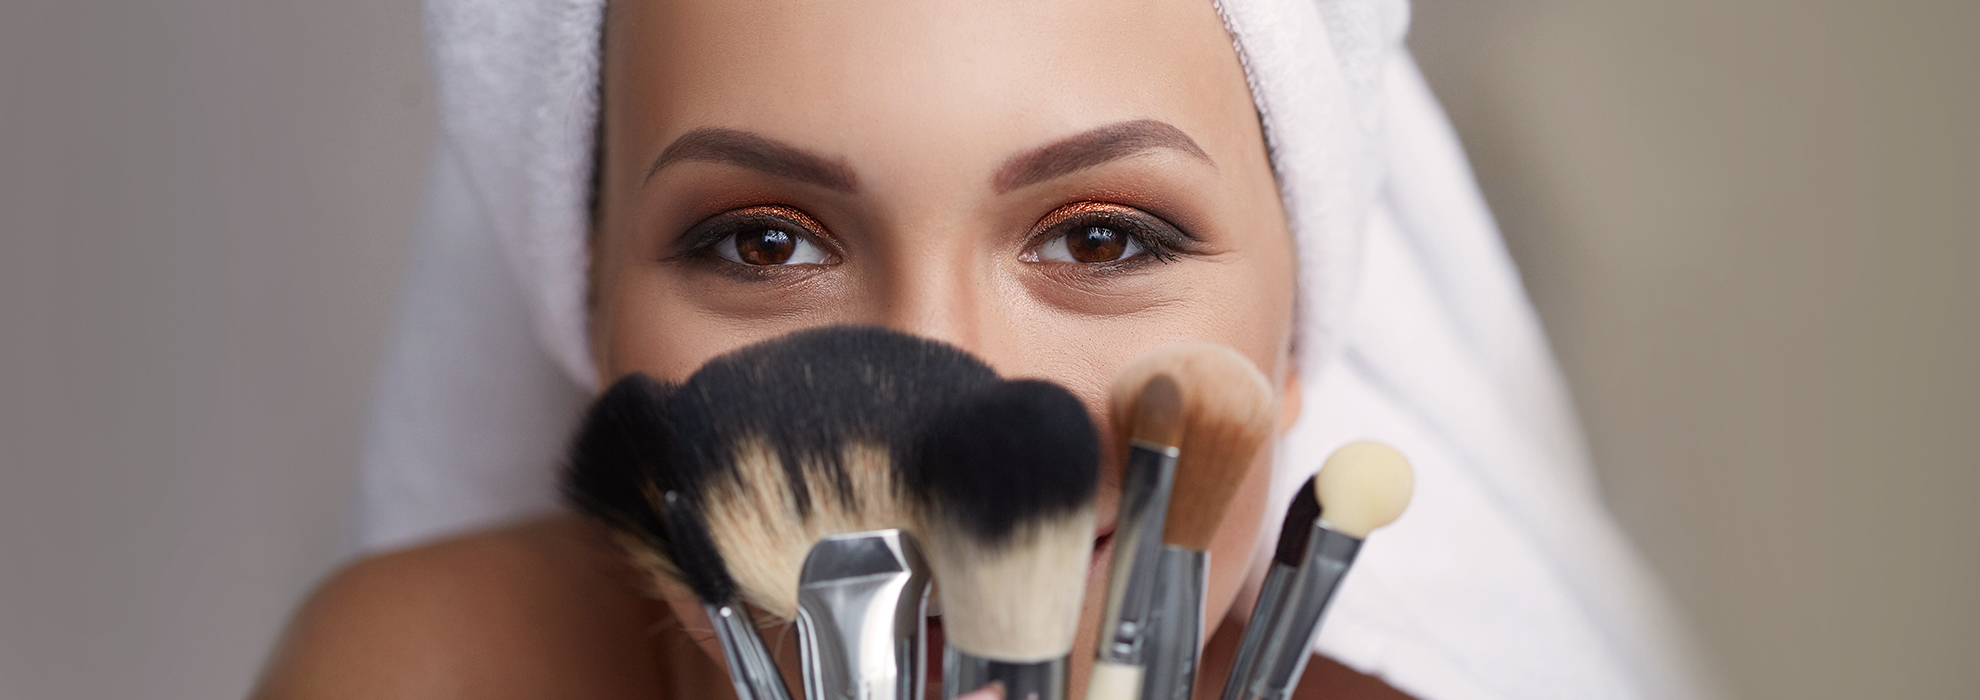 Pennelli makeup: quali scegliere? Breve guida per il trucco perfetto -  Città Sant'Angelo Village